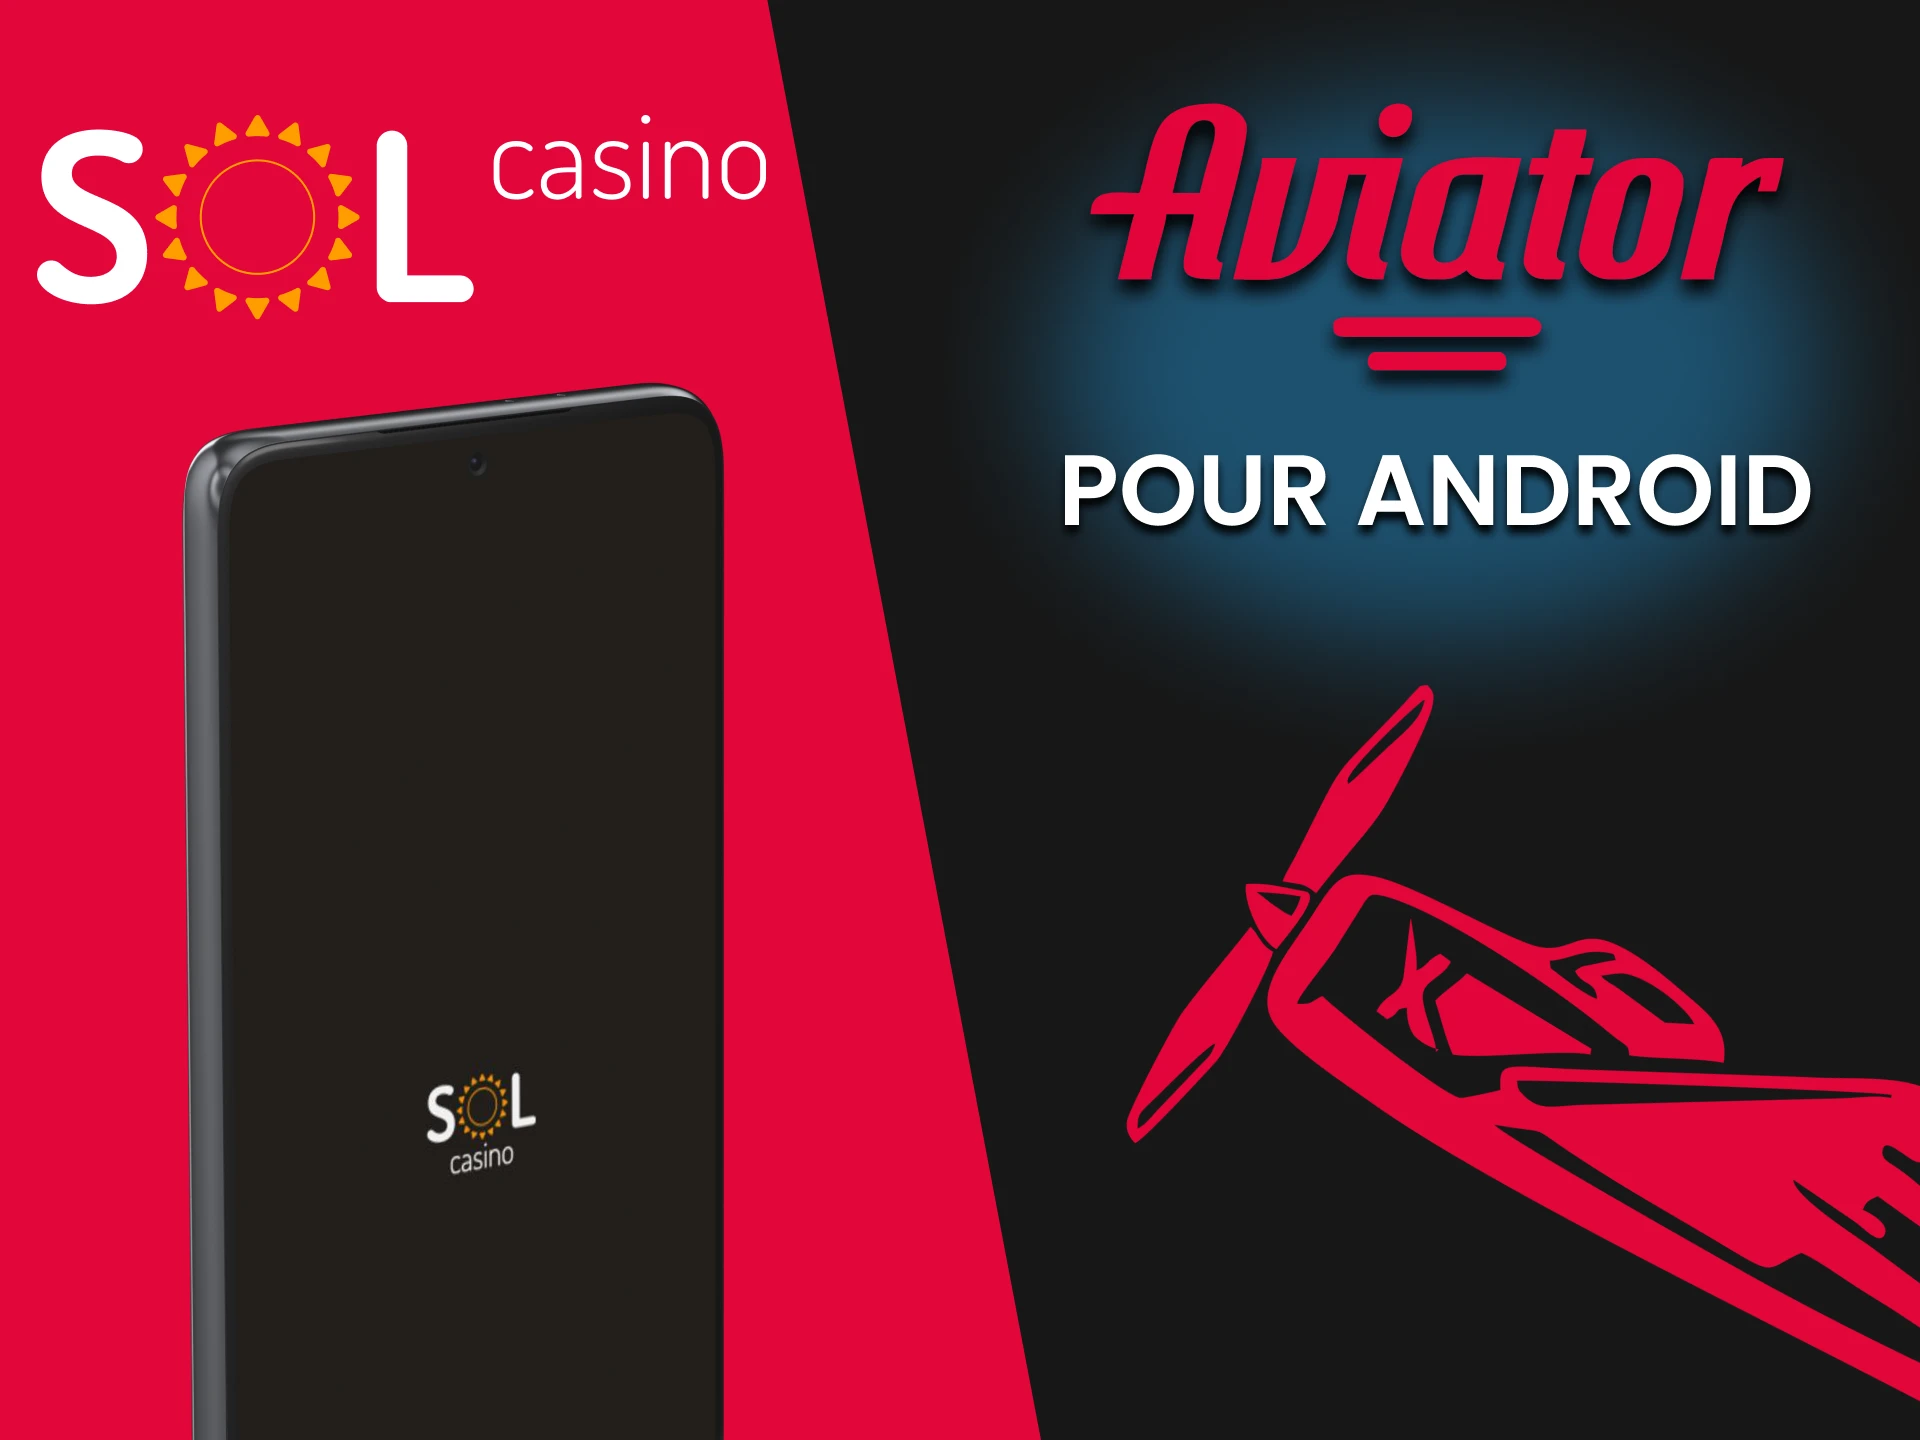 Téléchargez des applications Android pour jouer à Aviator depuis Sol Casino.